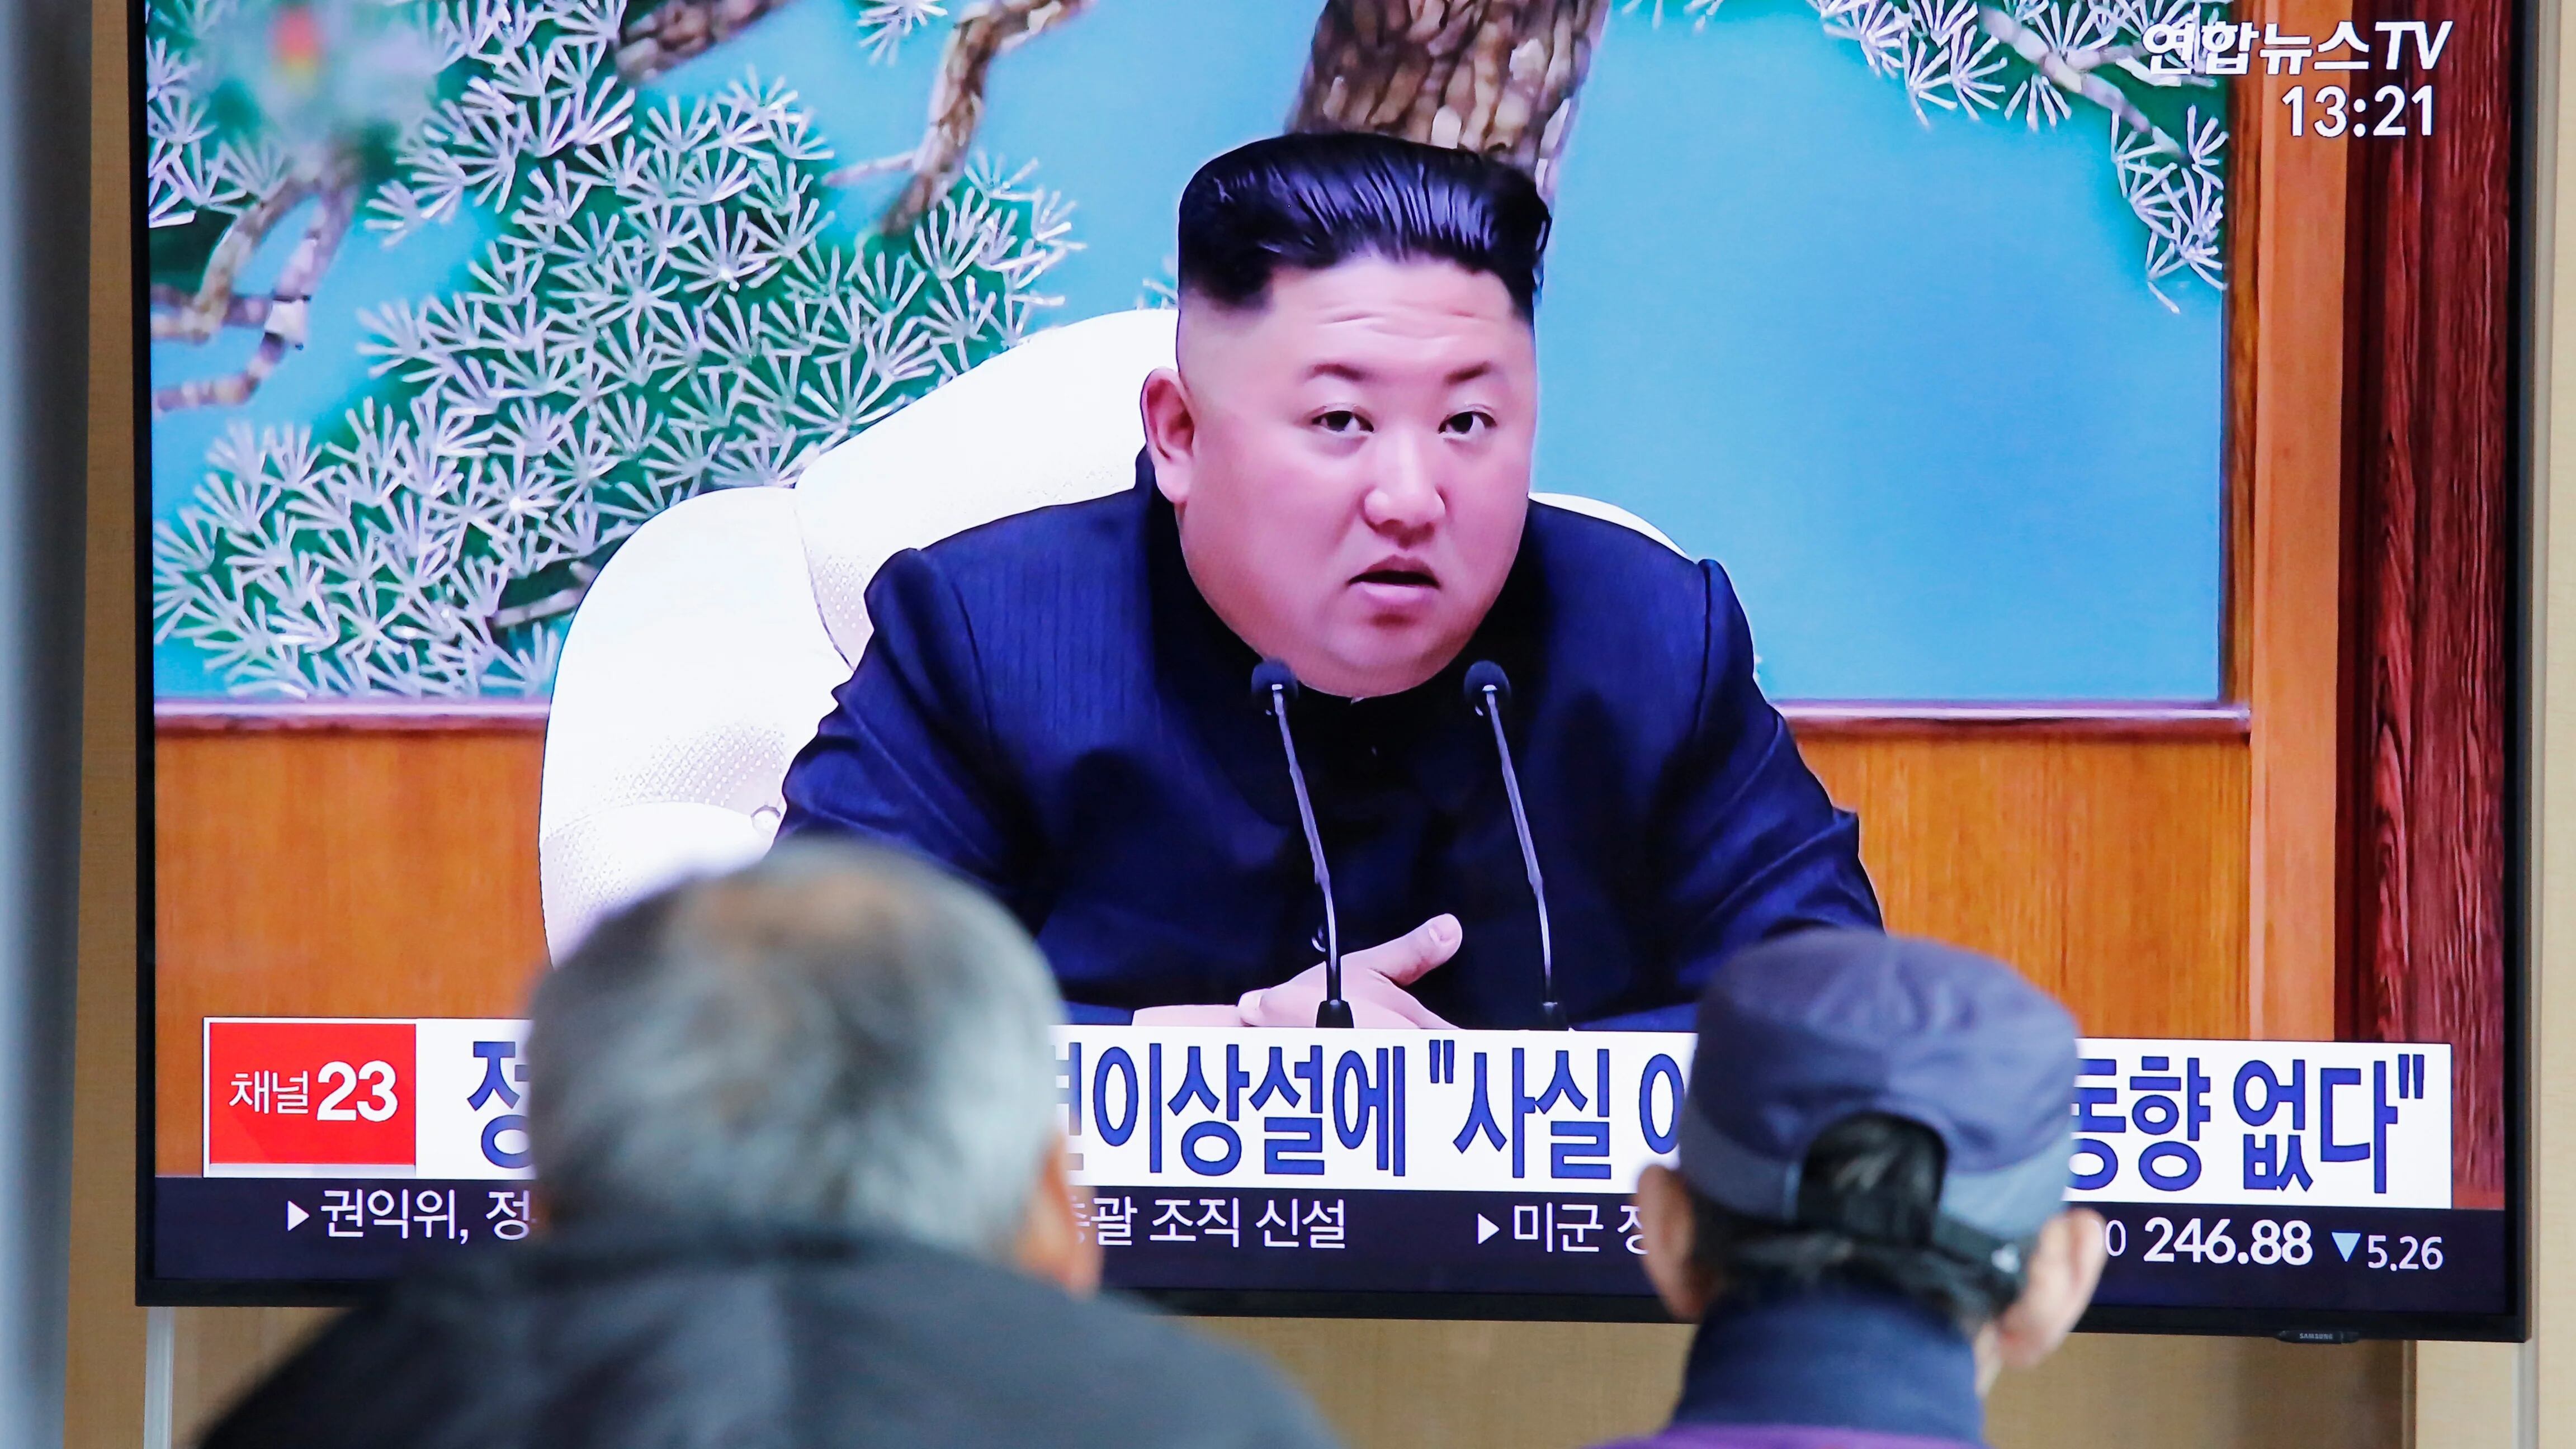 Una de las últimas apariciones pública de Kim en la televisión norcoreana (REUTERS/Heo Ran)